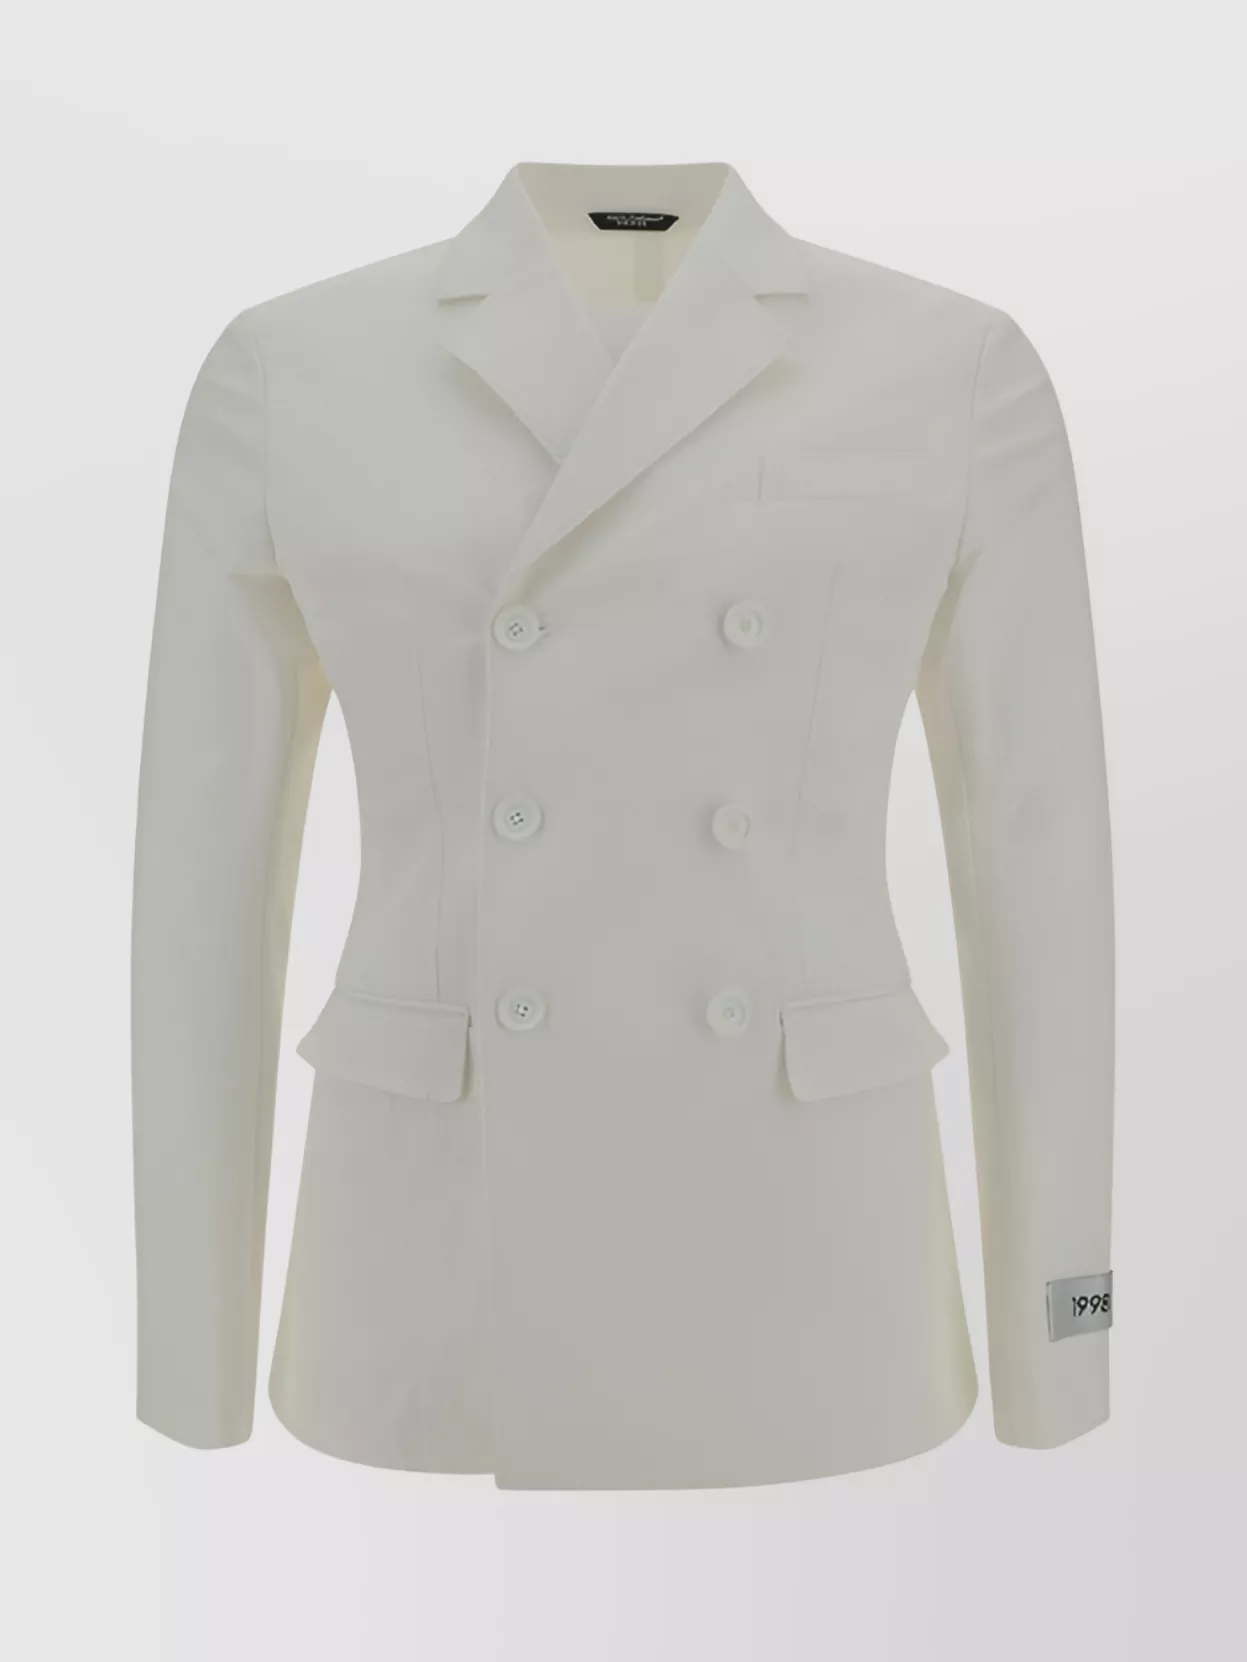 Dolce & Gabbana Cotton Blazer Jacket Monochrome Pattern In White